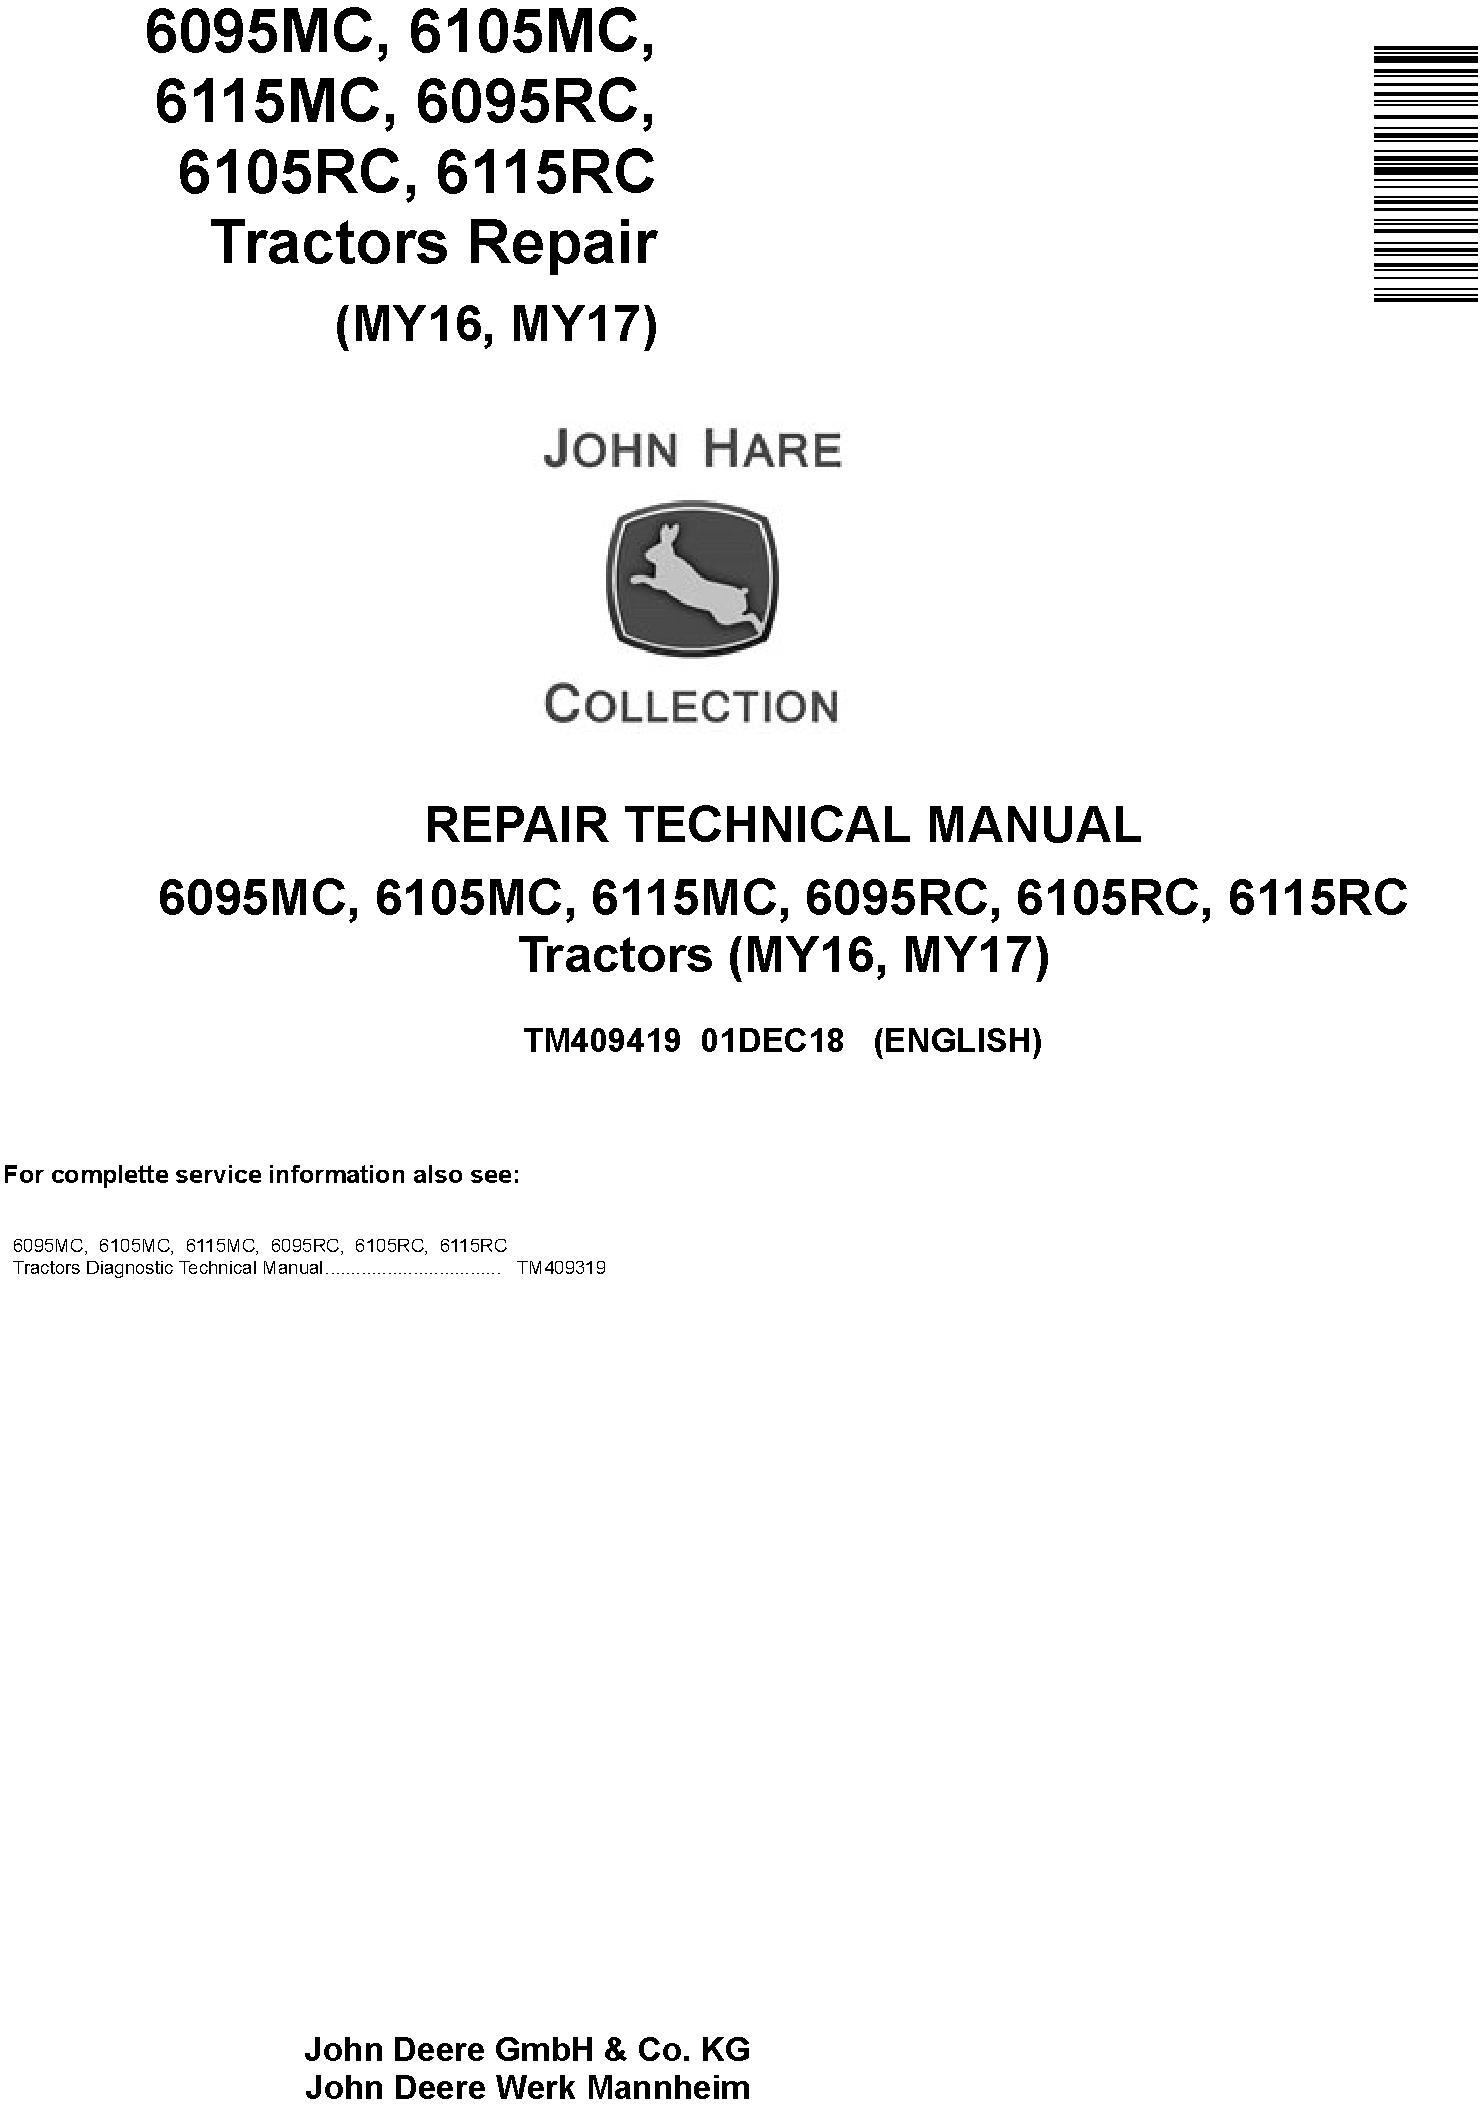 John Deere 6095MC to 6115RC Tractor Repair Technical Manual TM409419